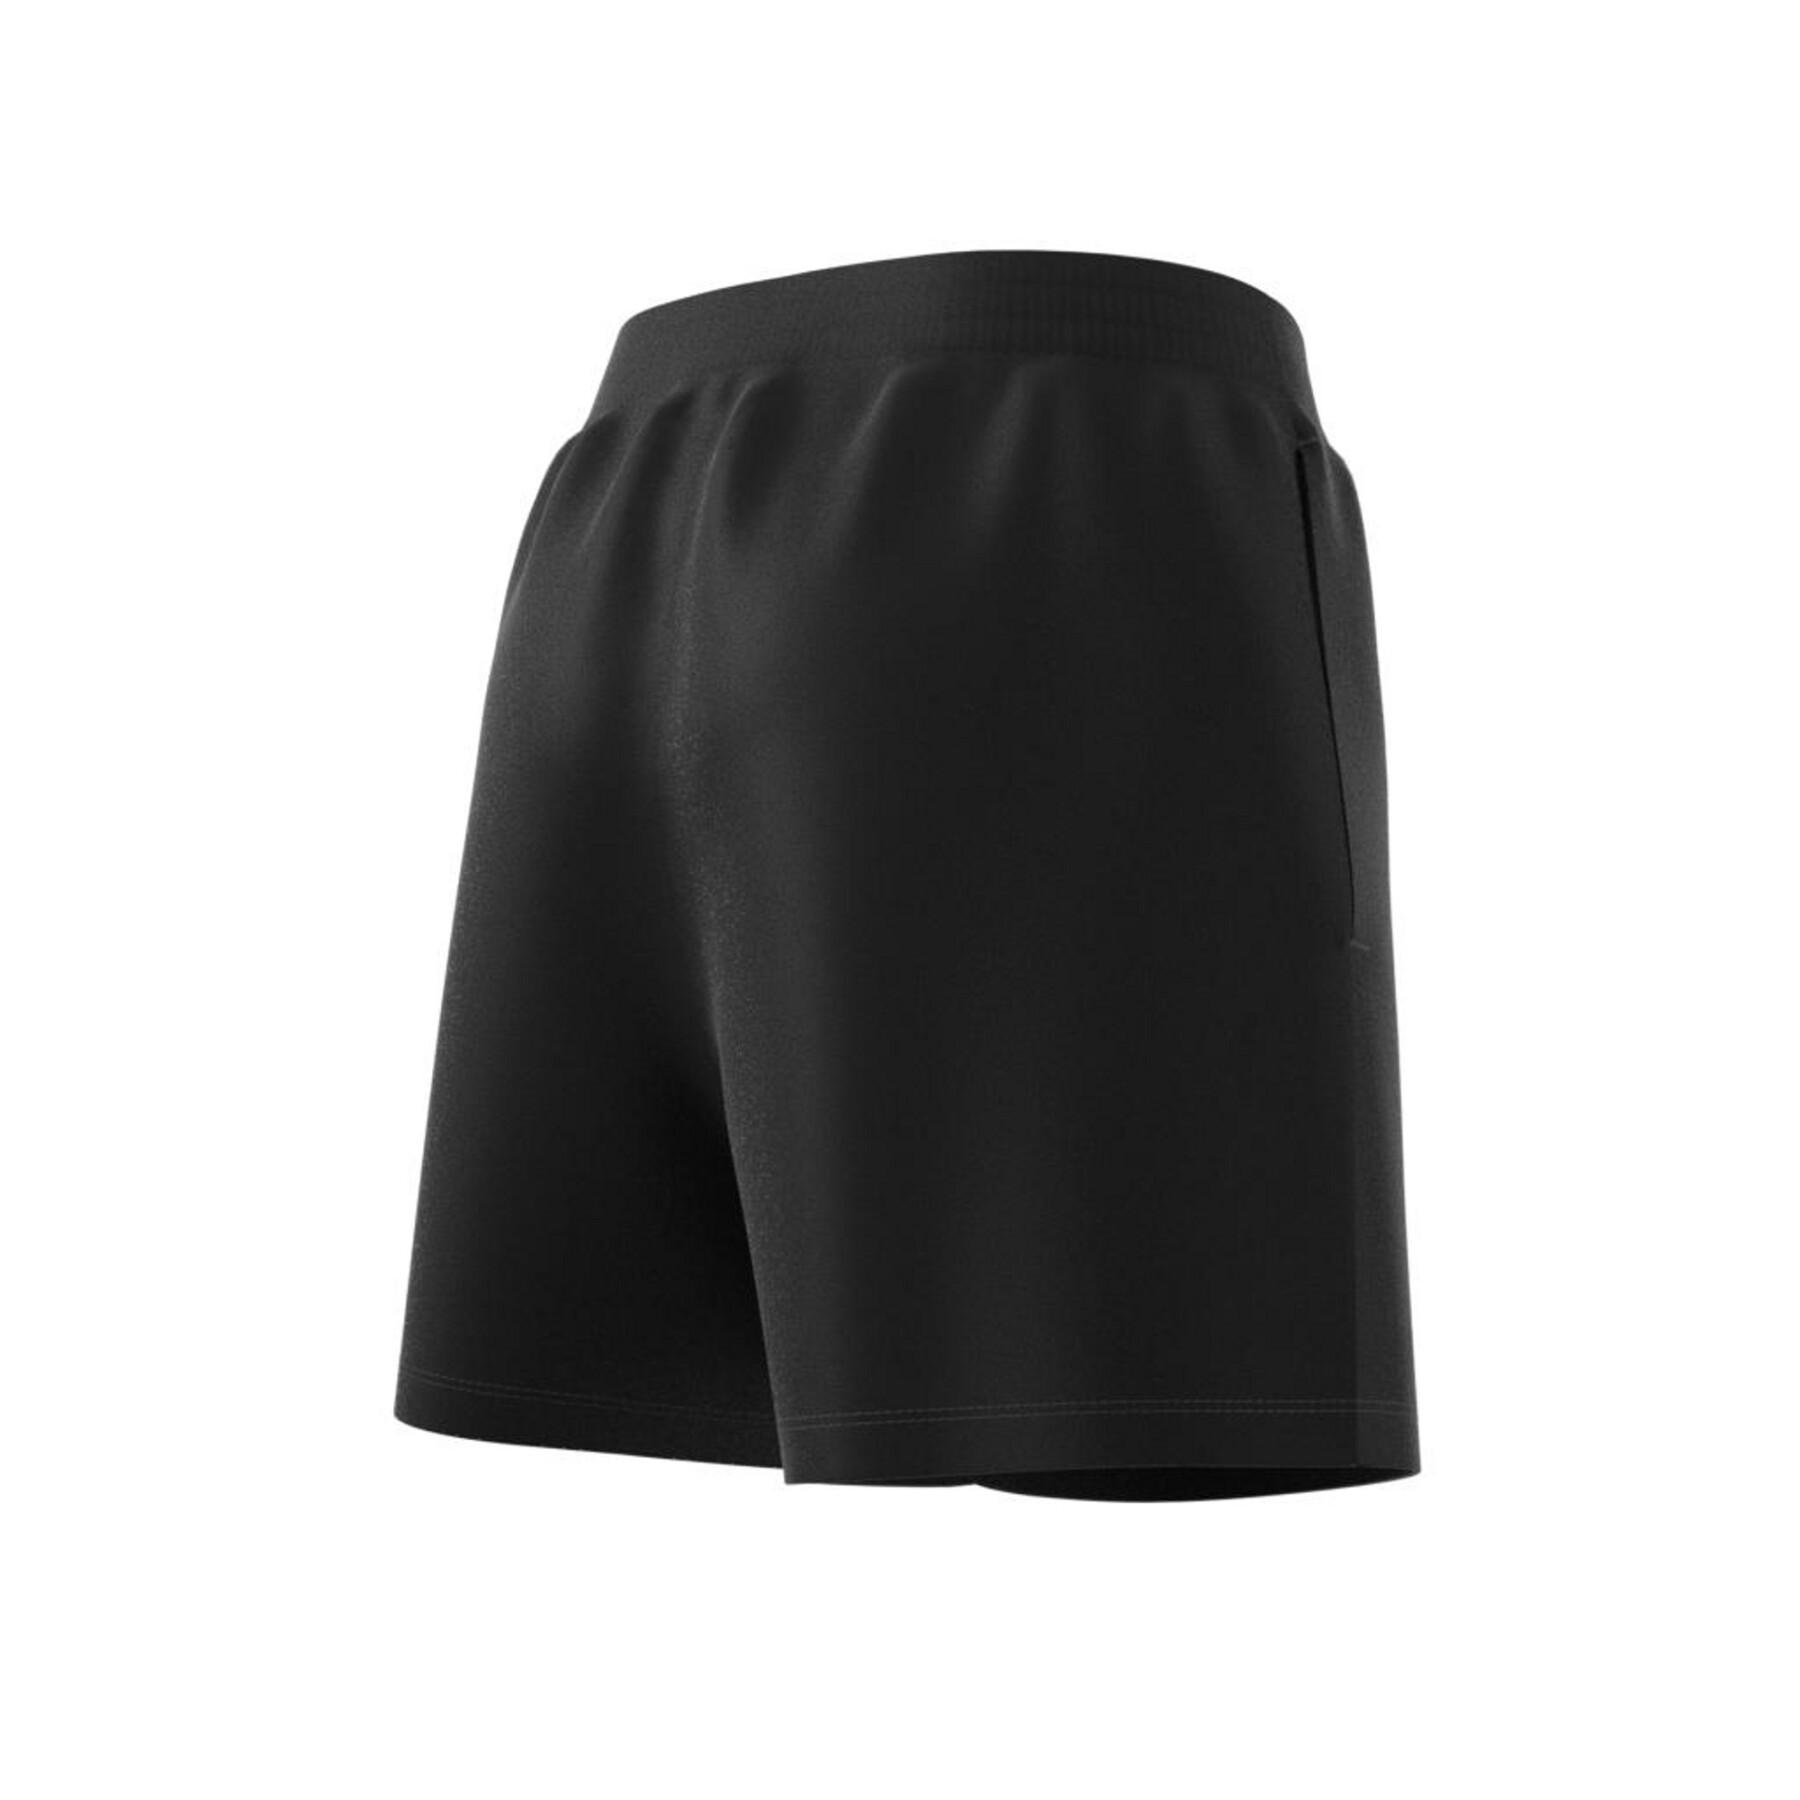 Damen-Shorts adidas Originals Adicolor Essentials